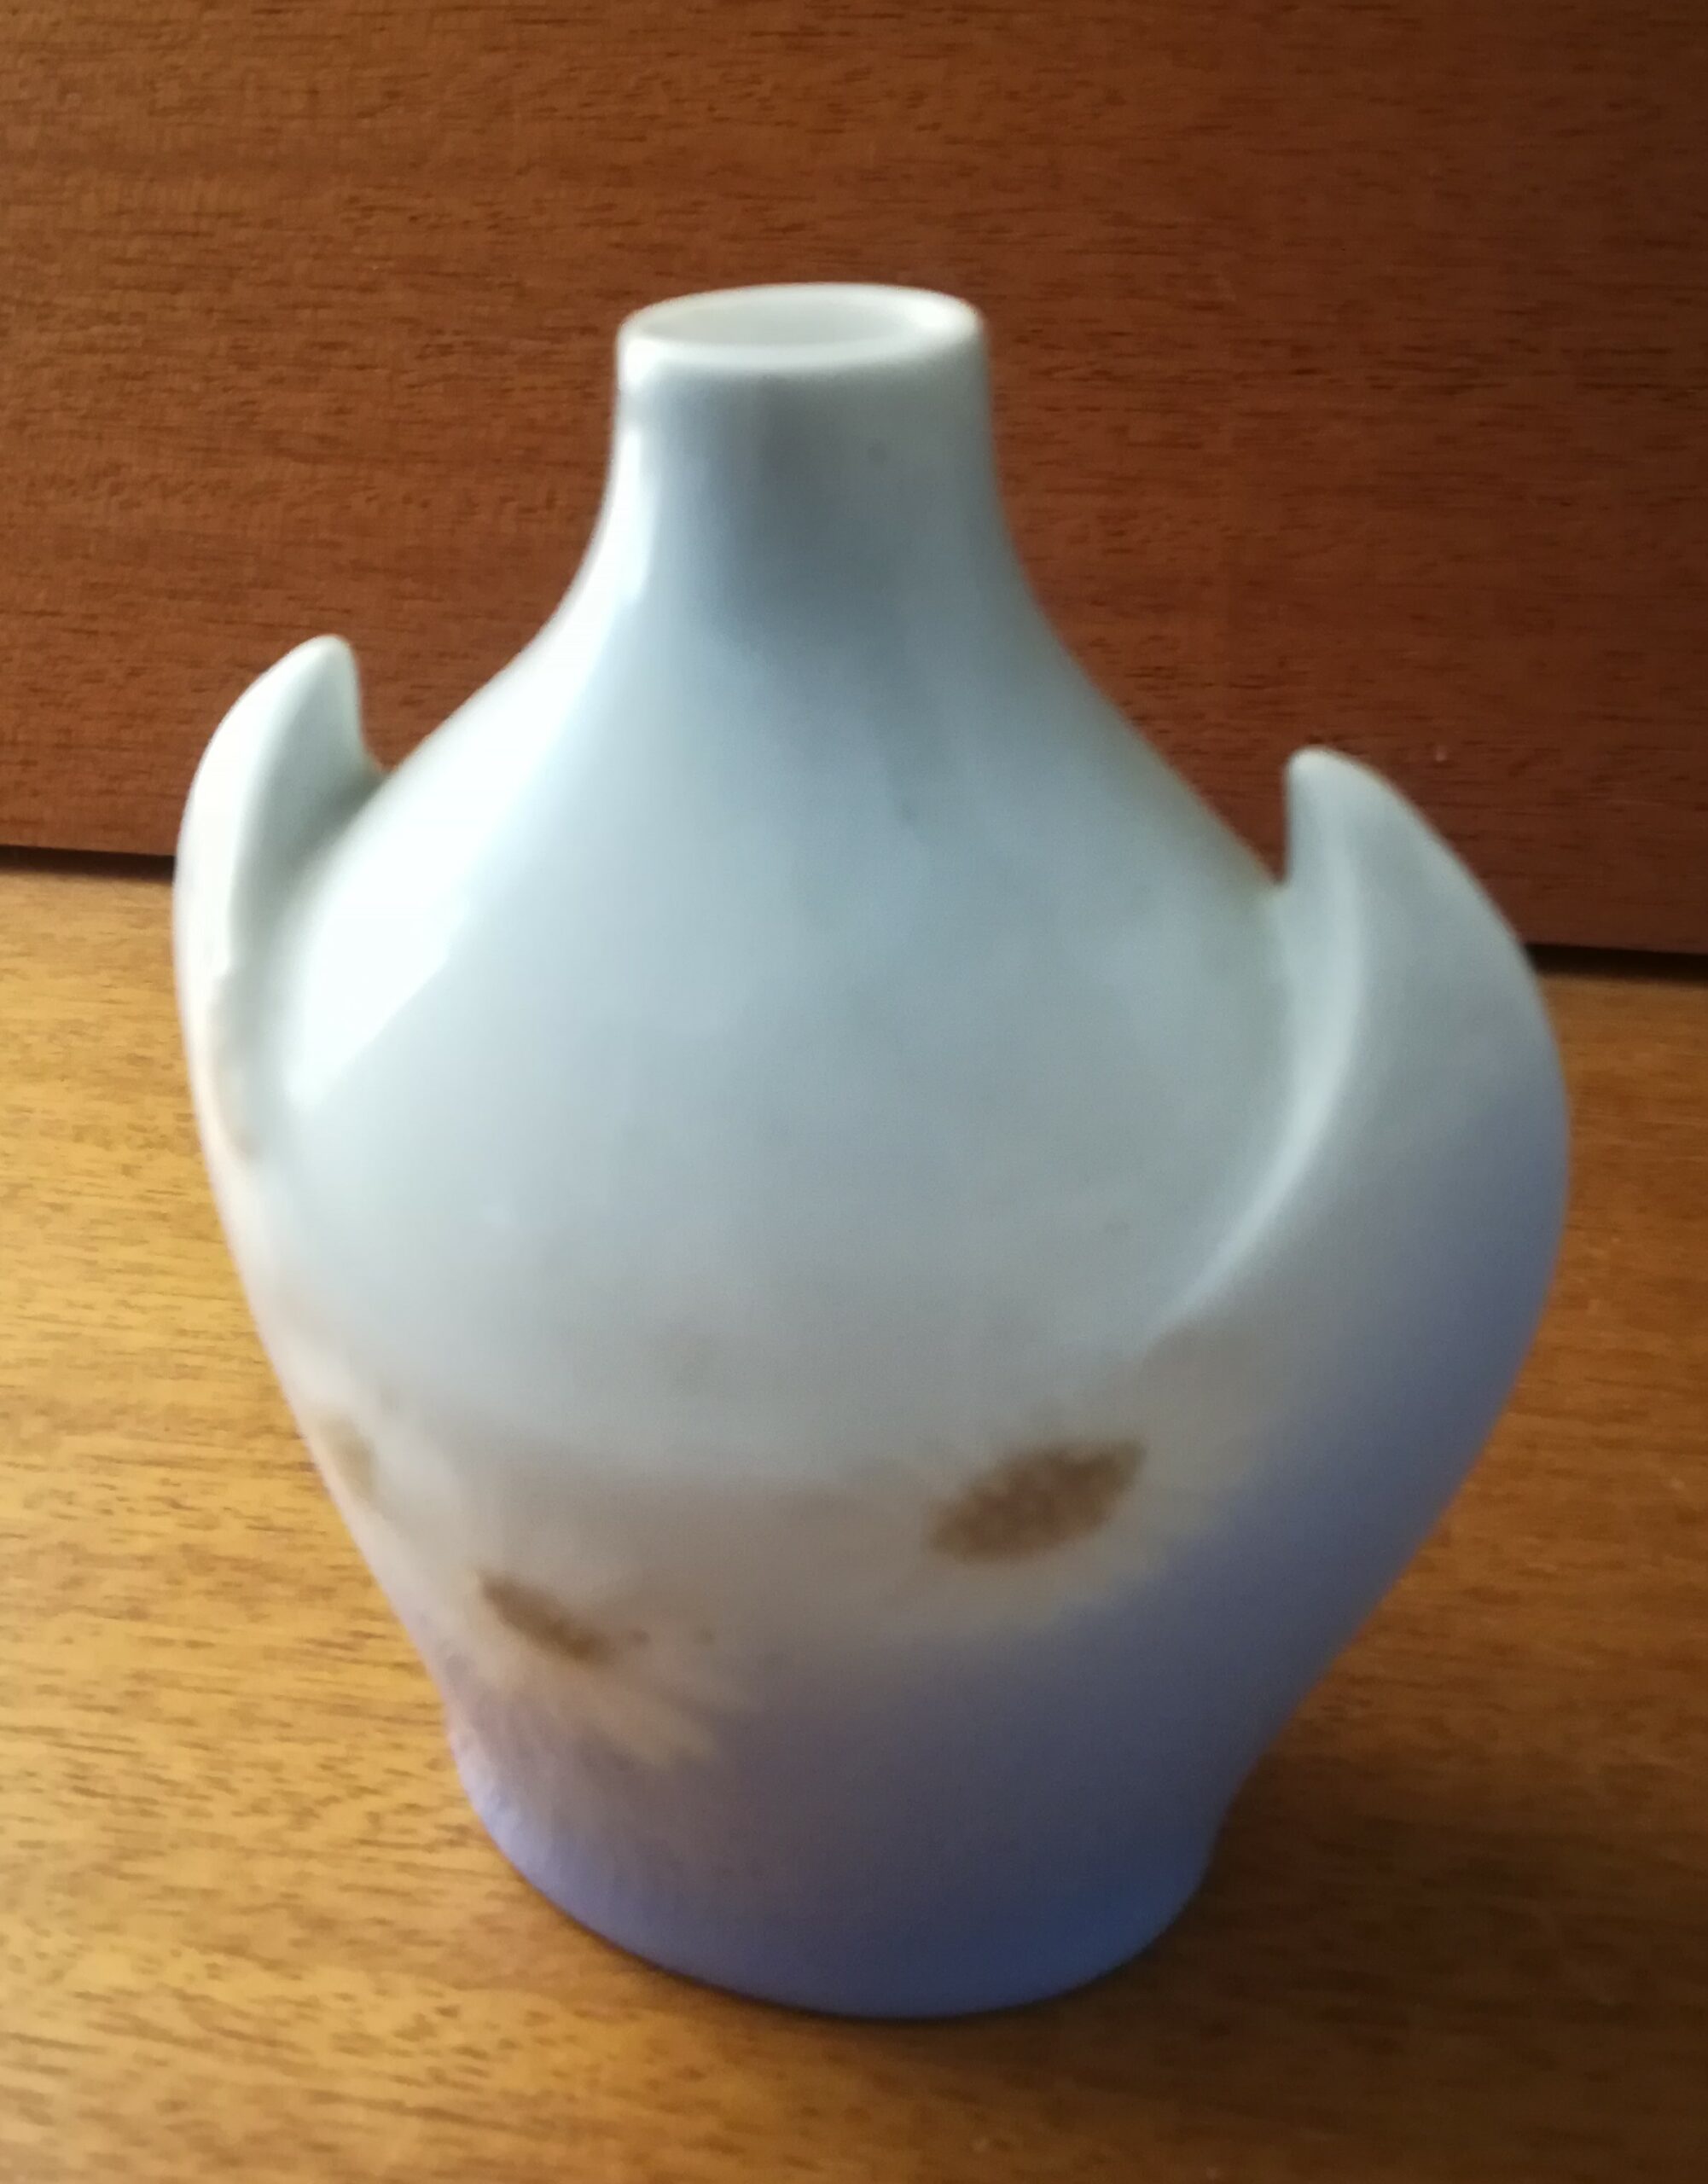 B&G artiskok vase